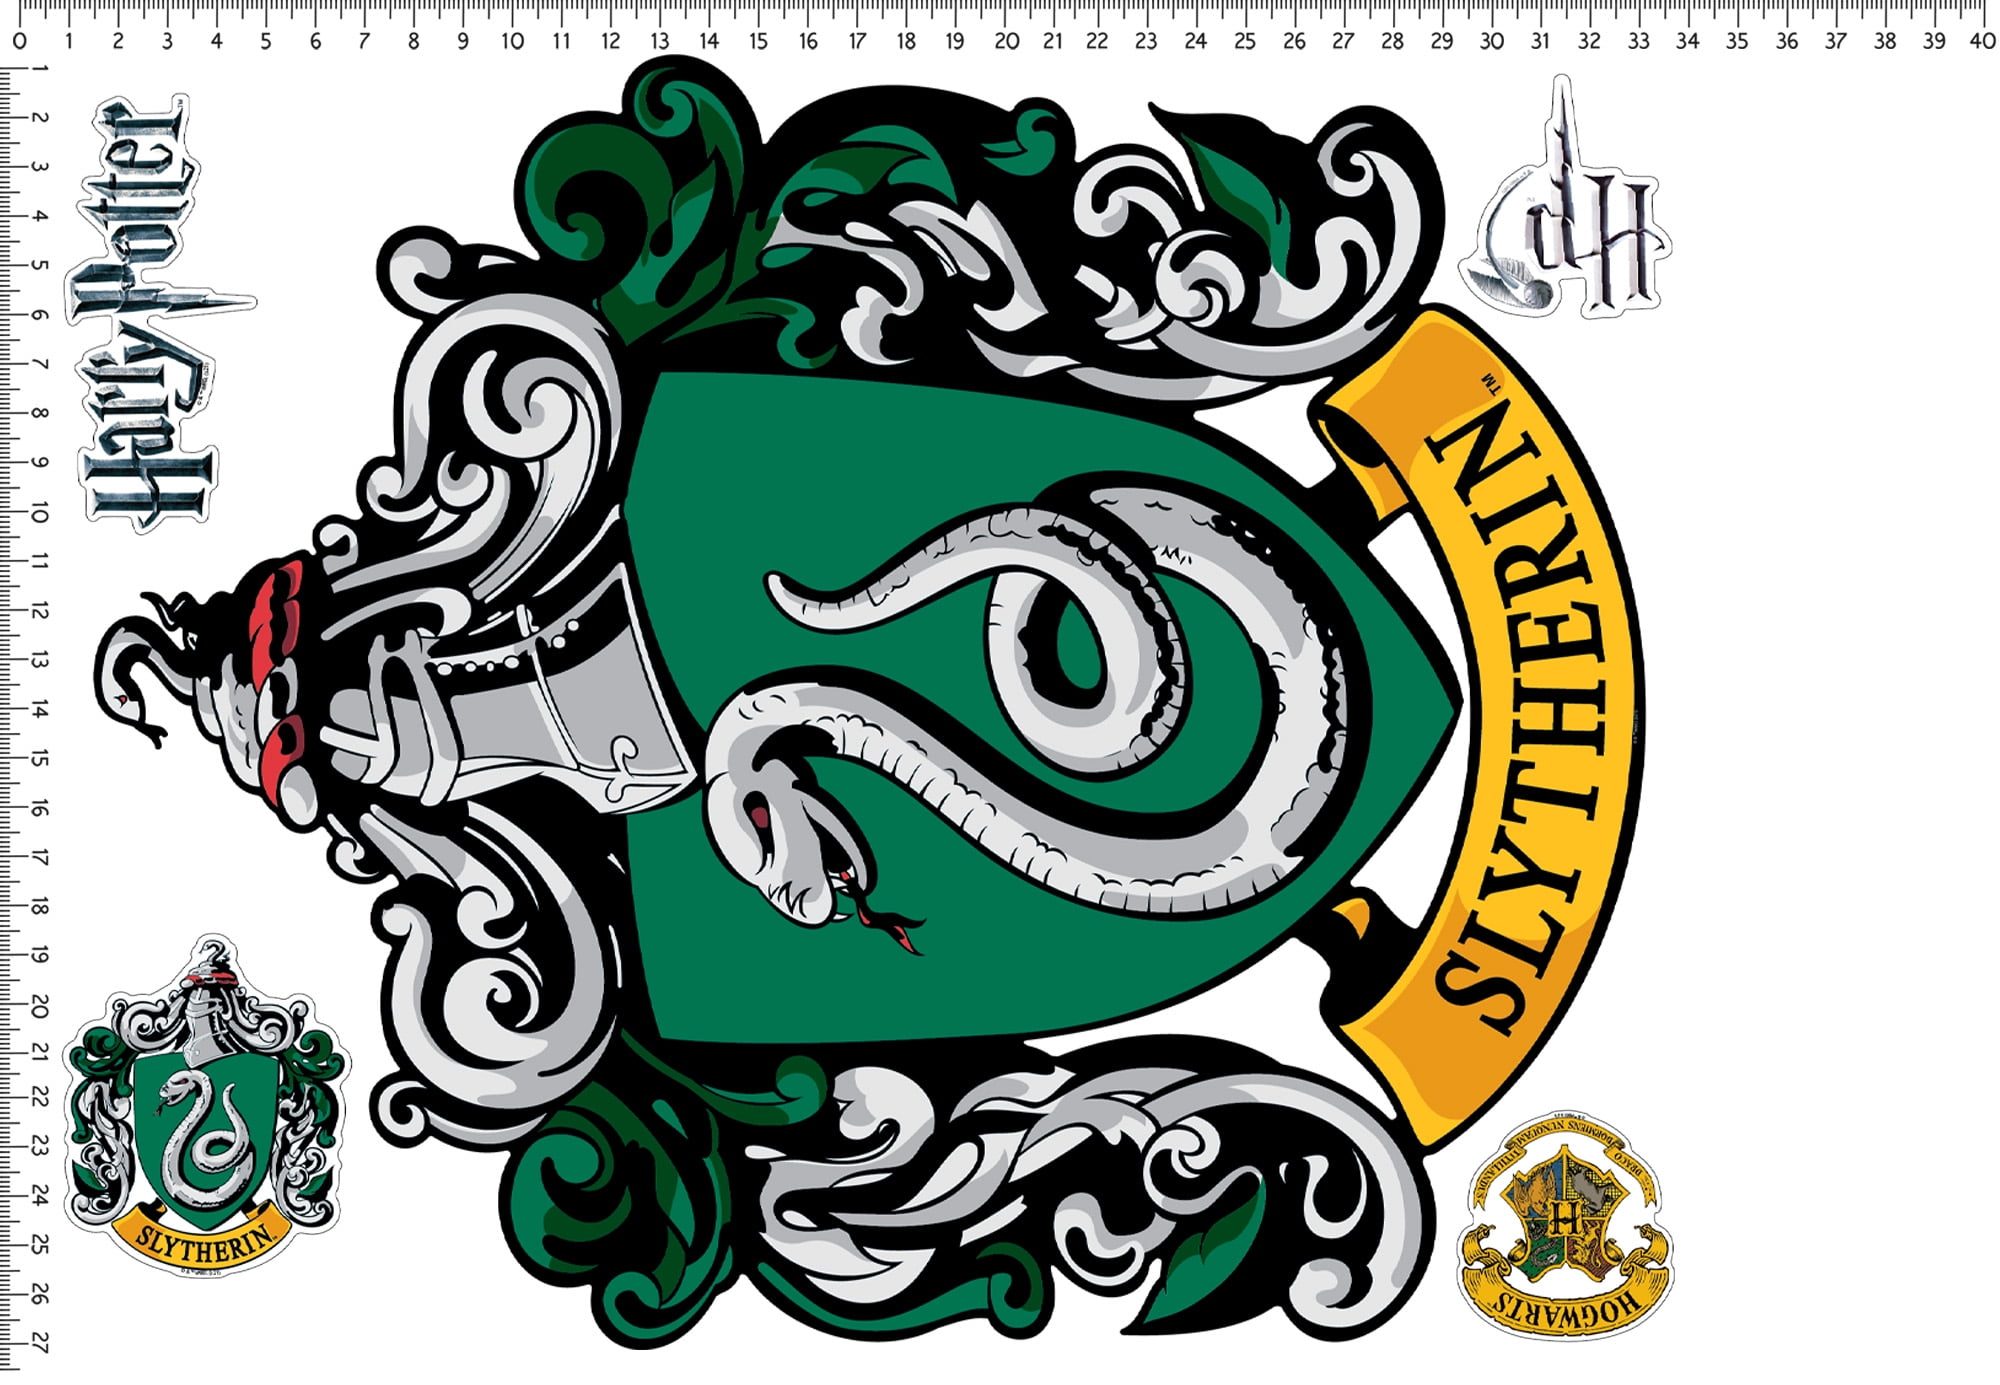 Harry Potter Slytherin Crest Sticker